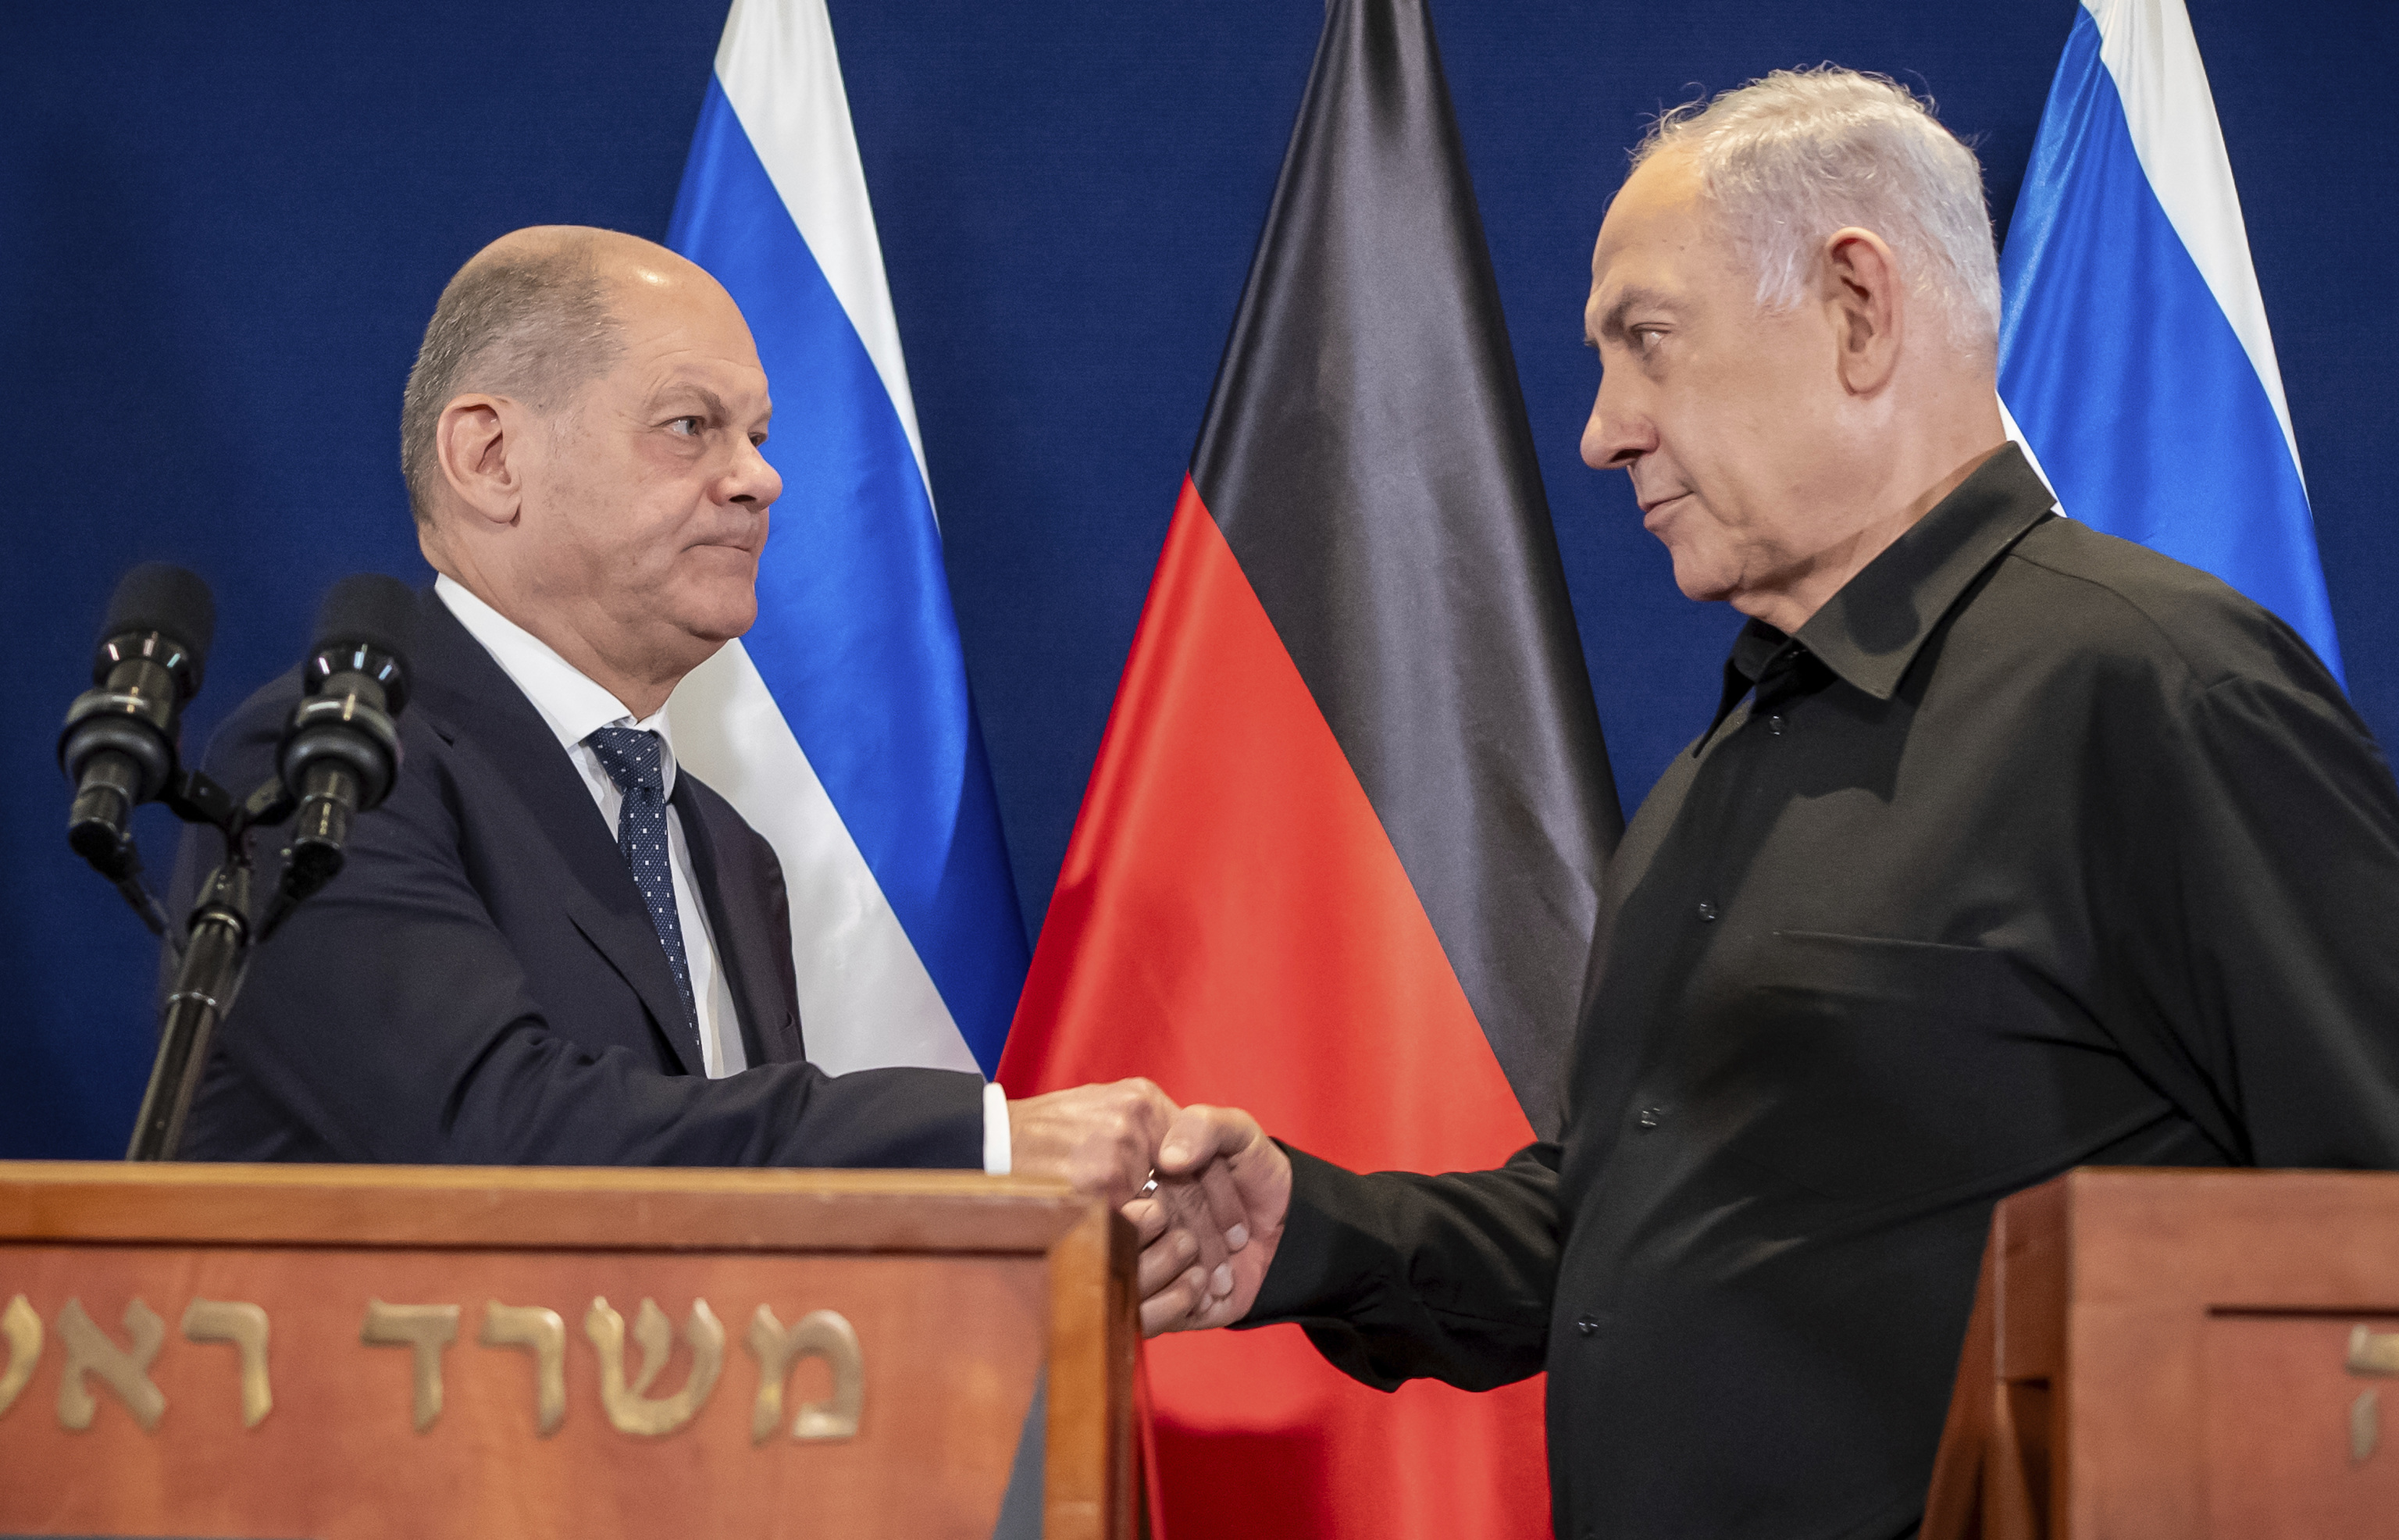 Inquebrantable consenso en torno a Israel en Alemania